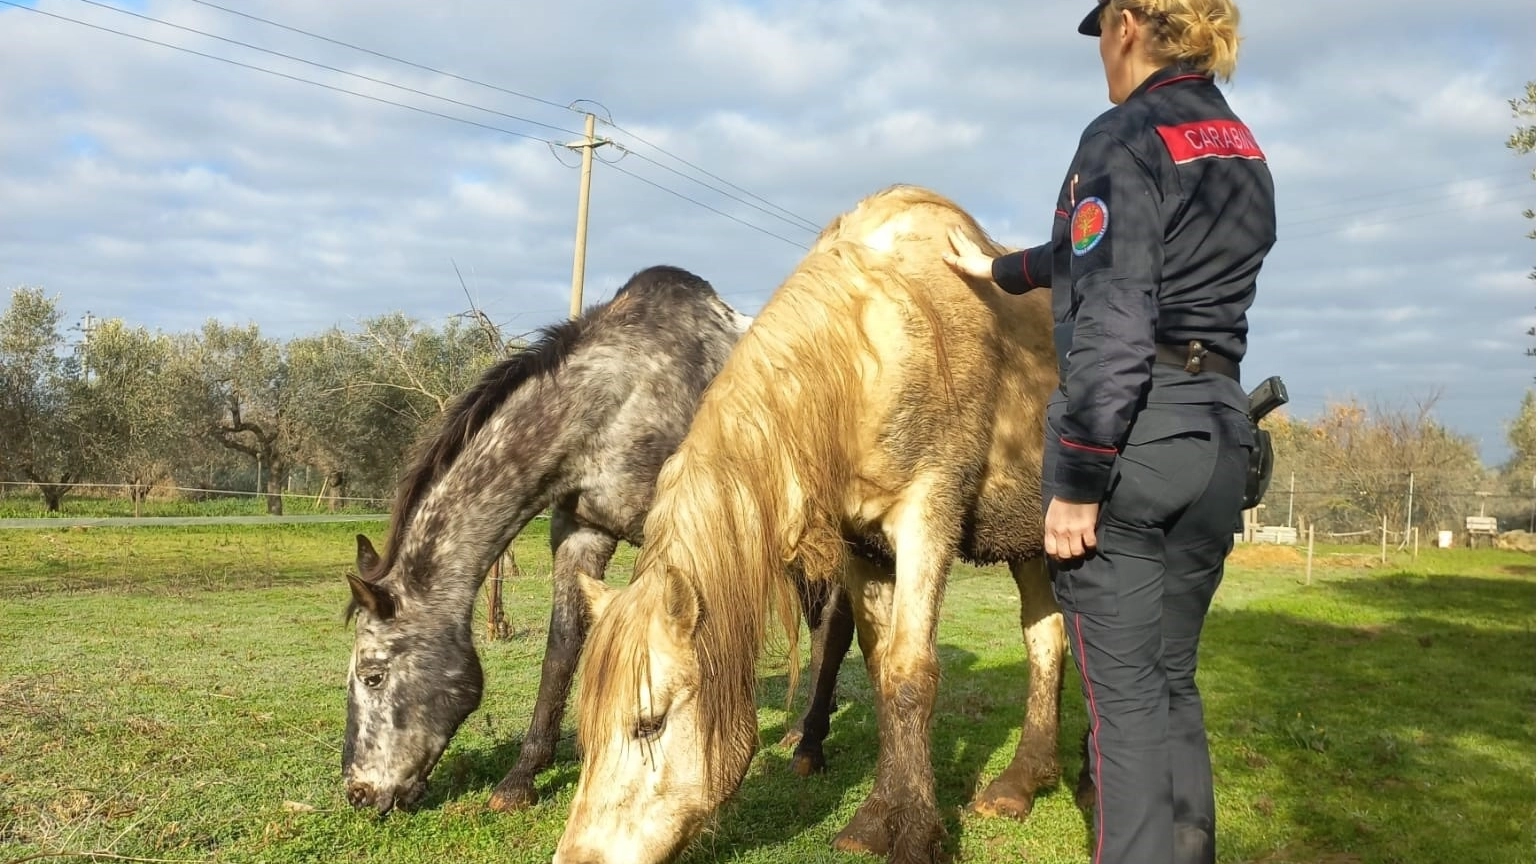 Salvati i cavalli dai carabinieri della Forestale, dopo i controlli in un maneggio